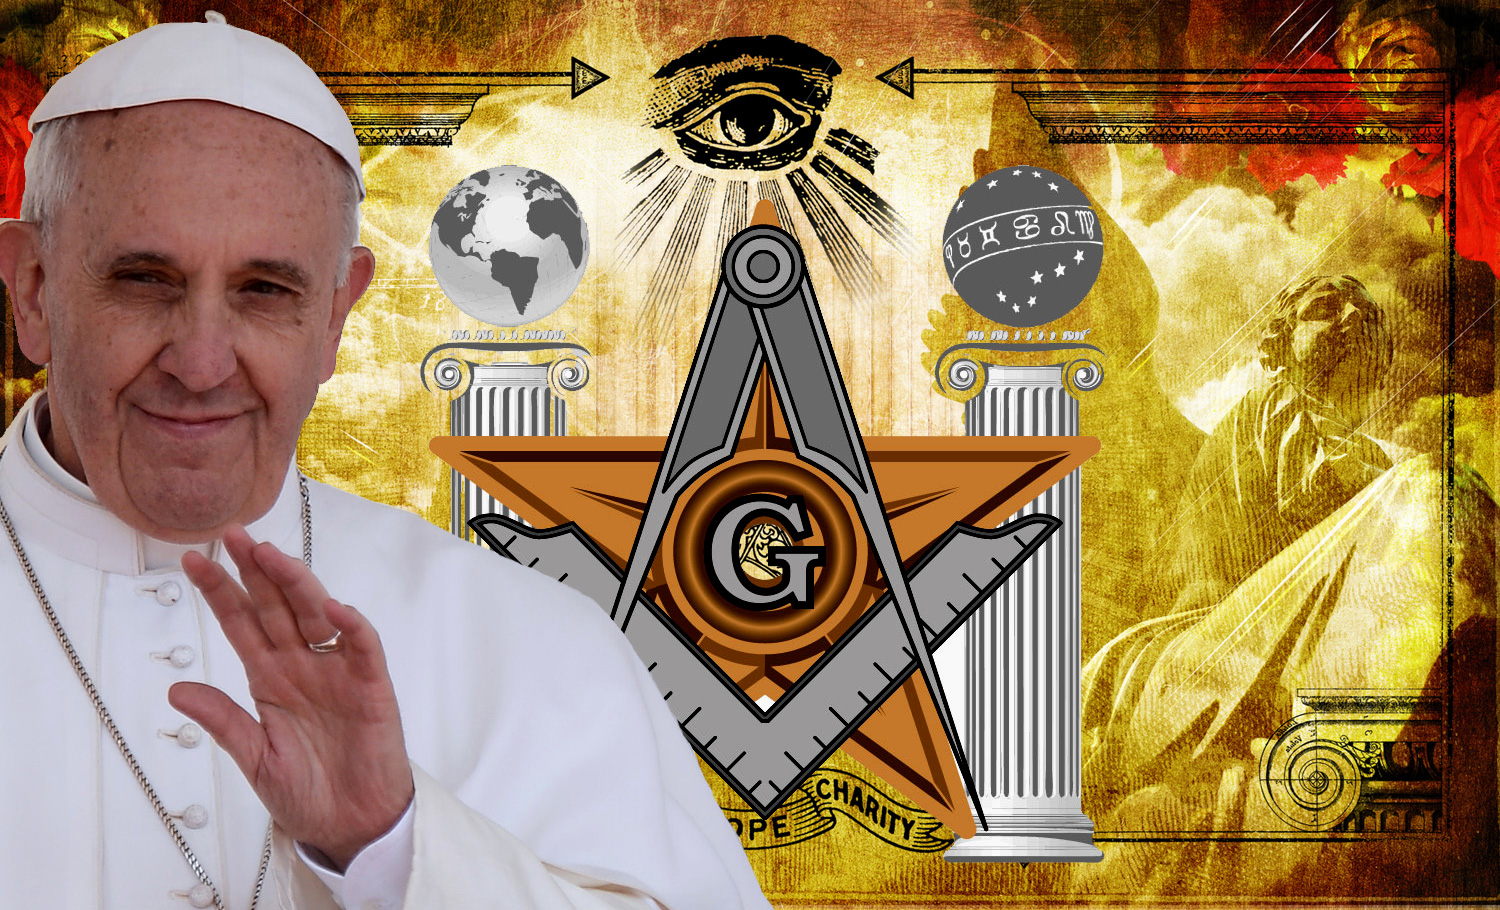 Freemasons – Catholics